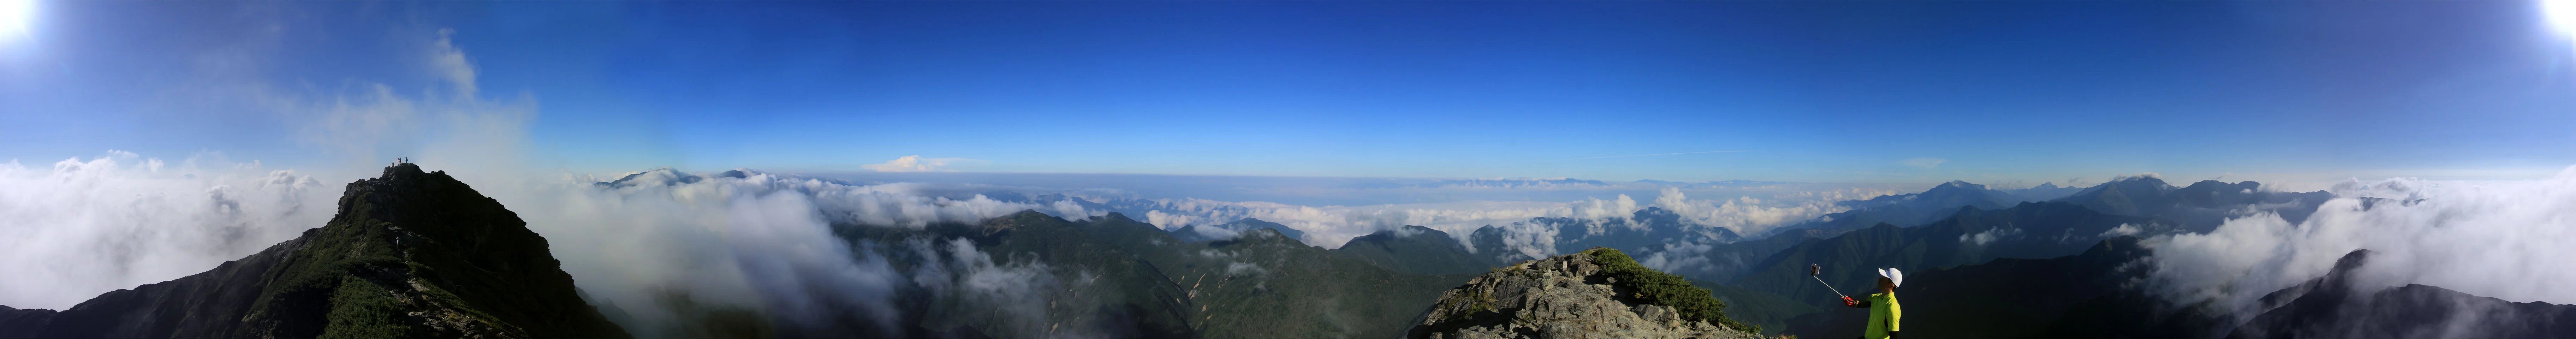 塩見岳からのパノラマ写真